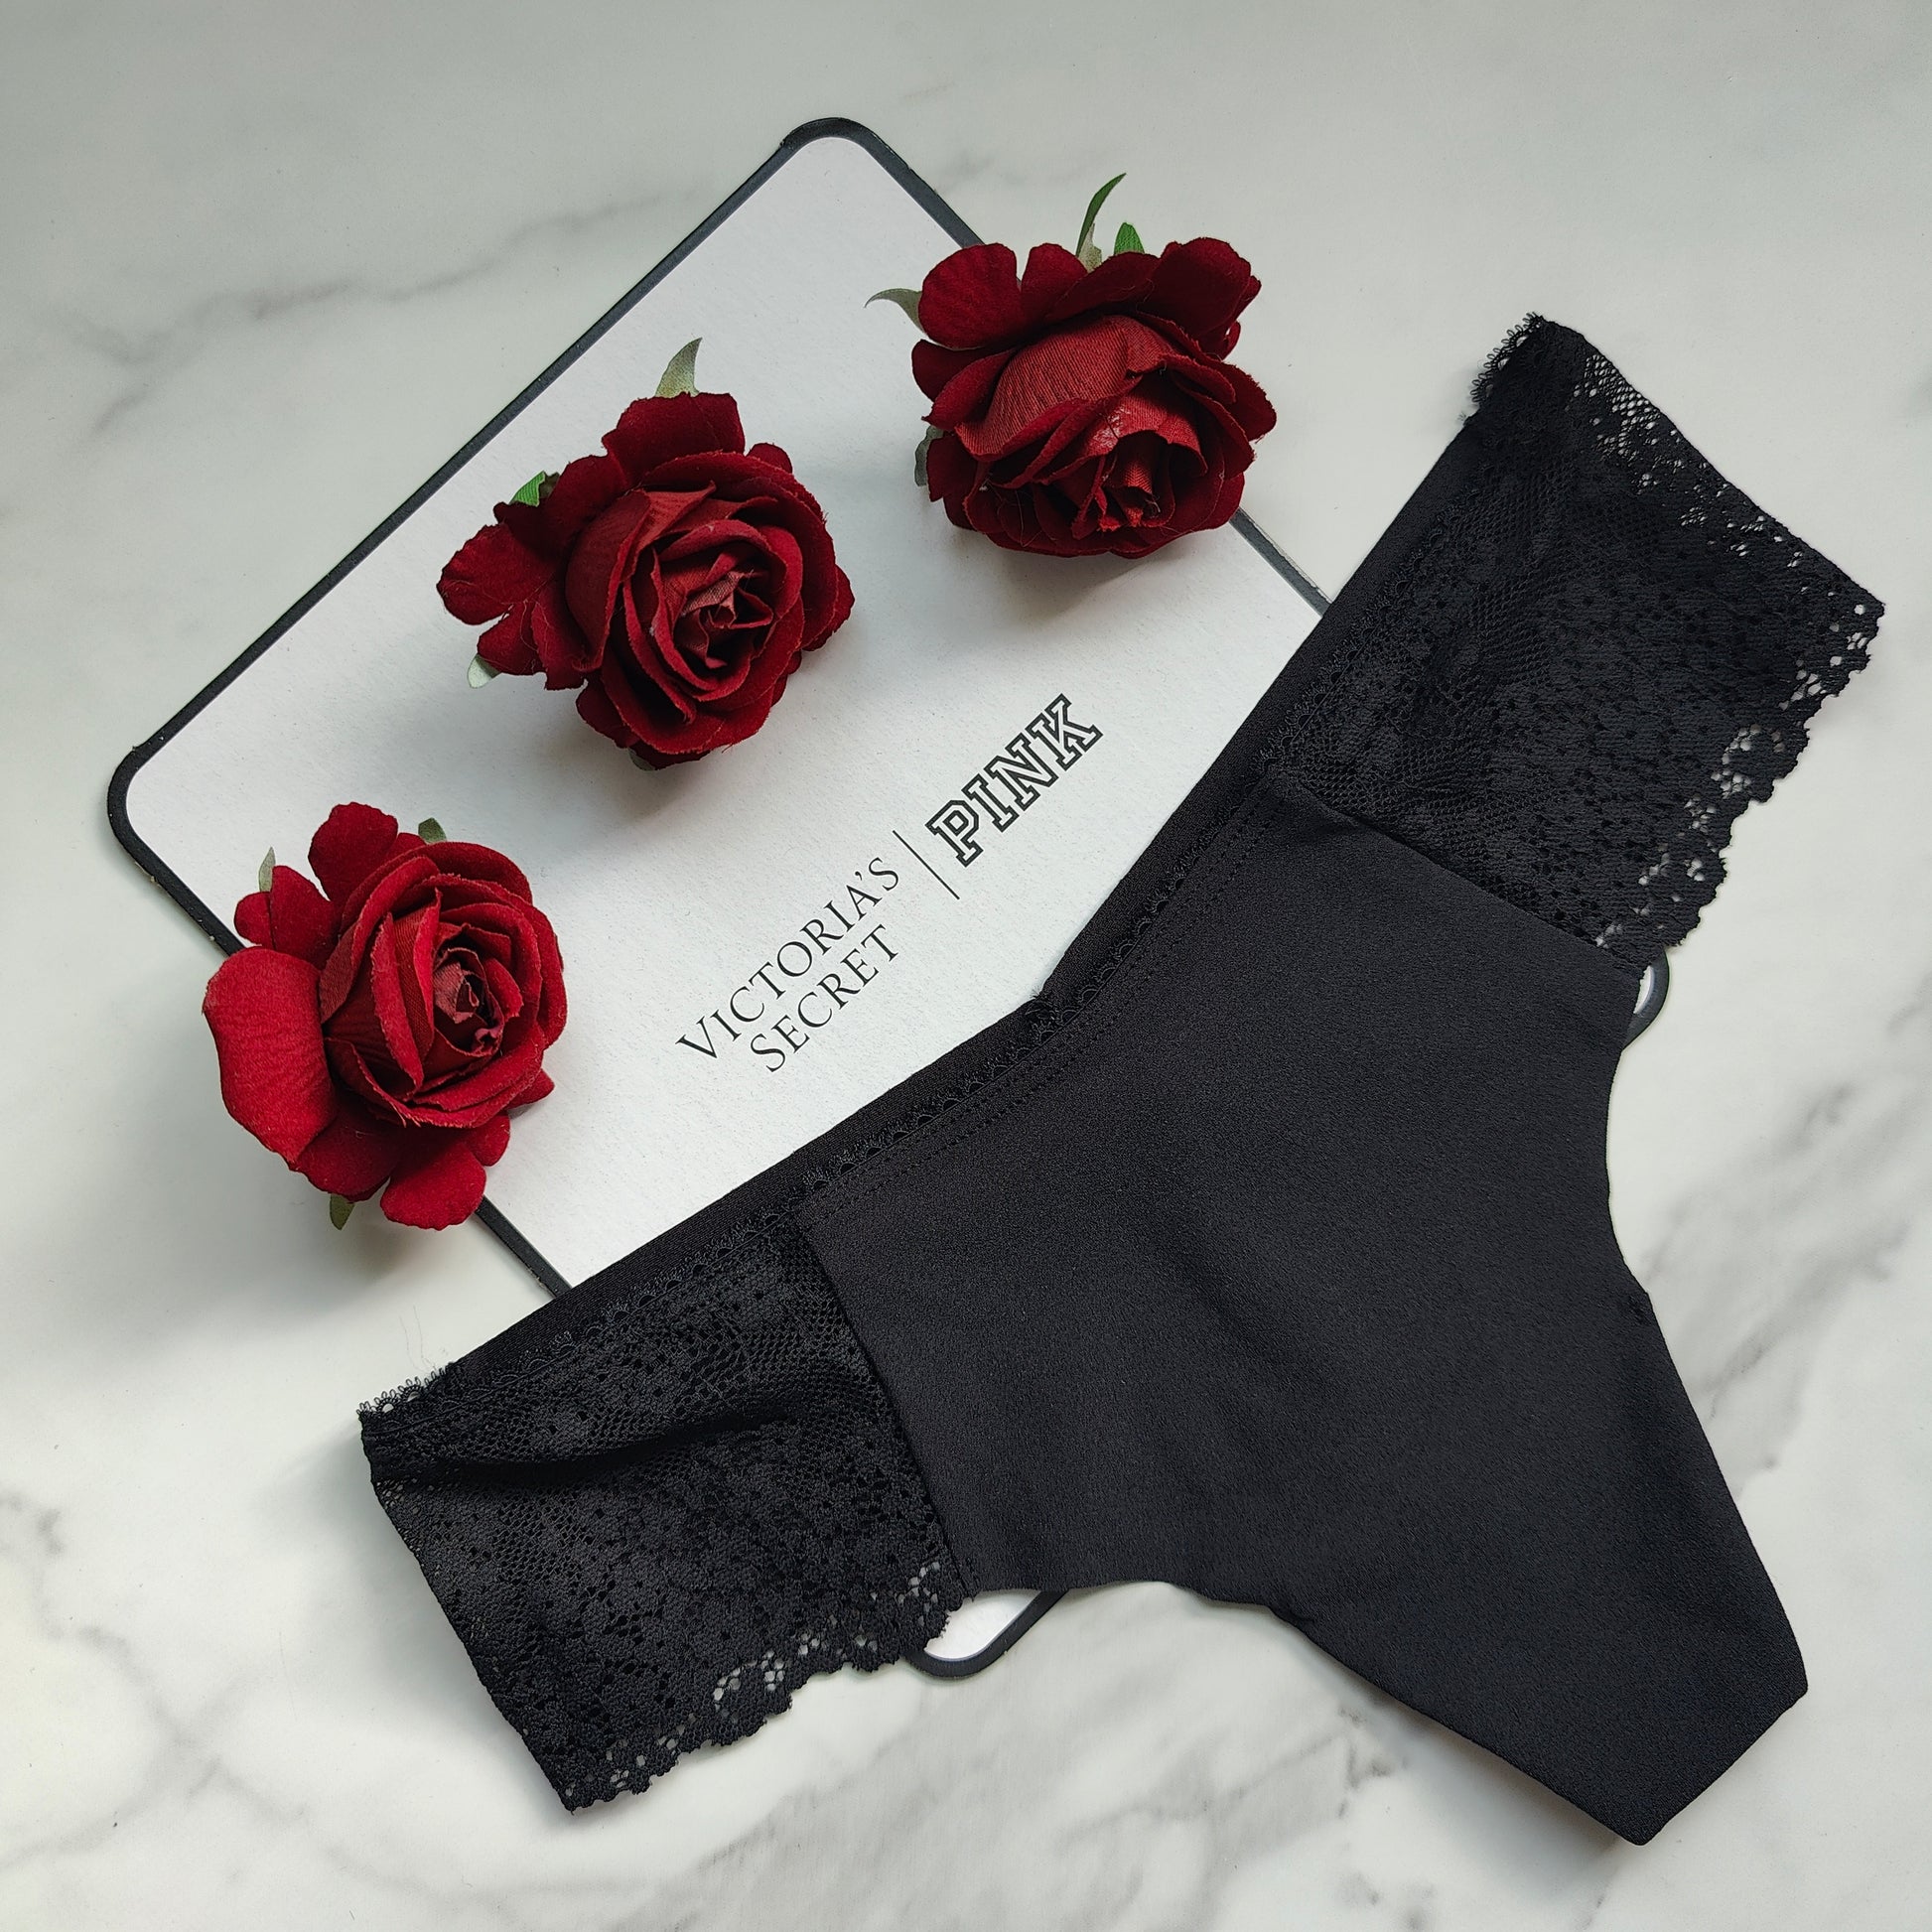 Lace Detail No-Show Thong Panty – Goob's Closet & Boutique